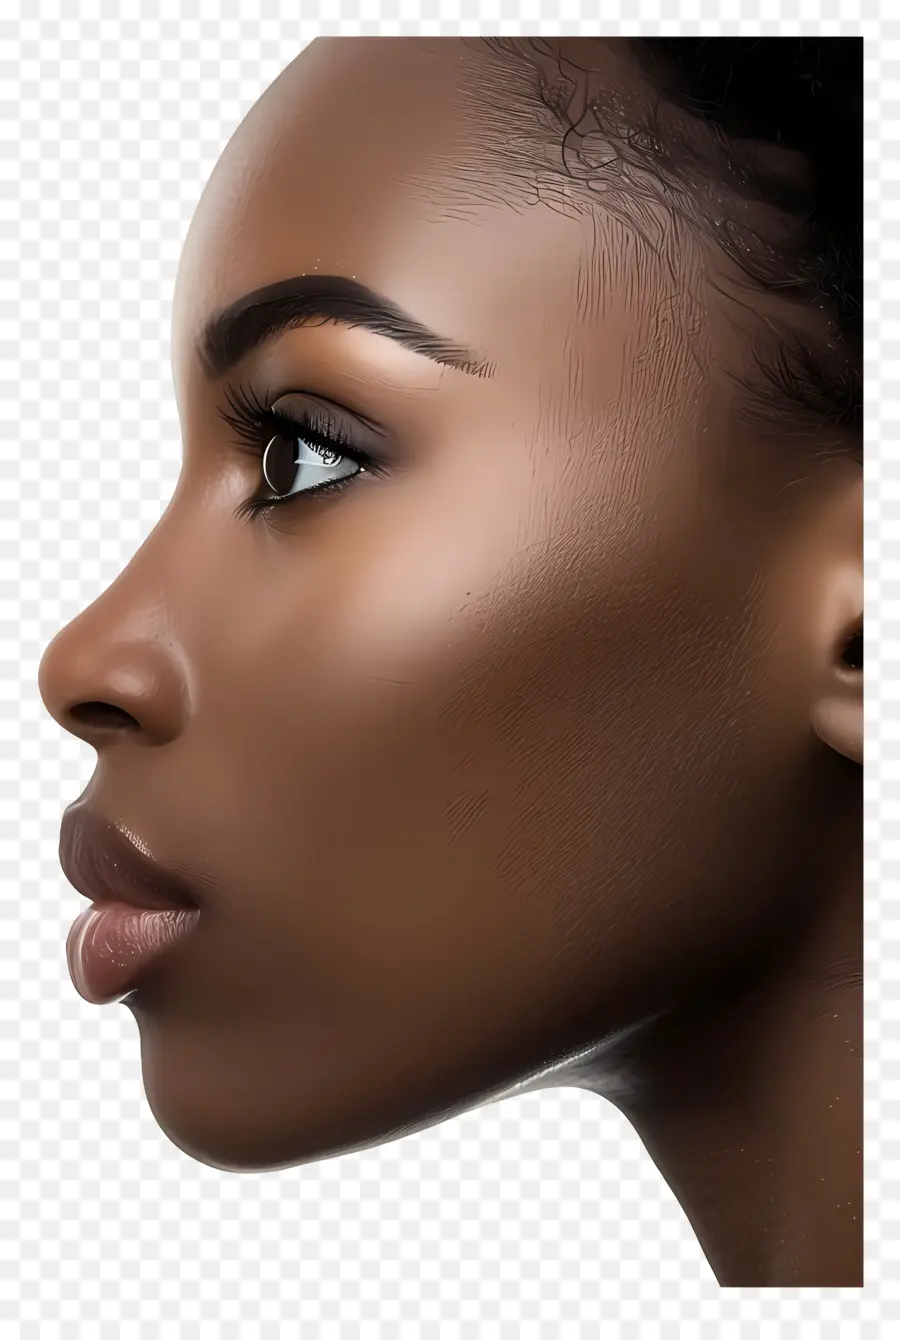 Donna nera Face Dark Skin Dark Woman Face Makeup - Donna con pelle scura, occhi, ombre del naso